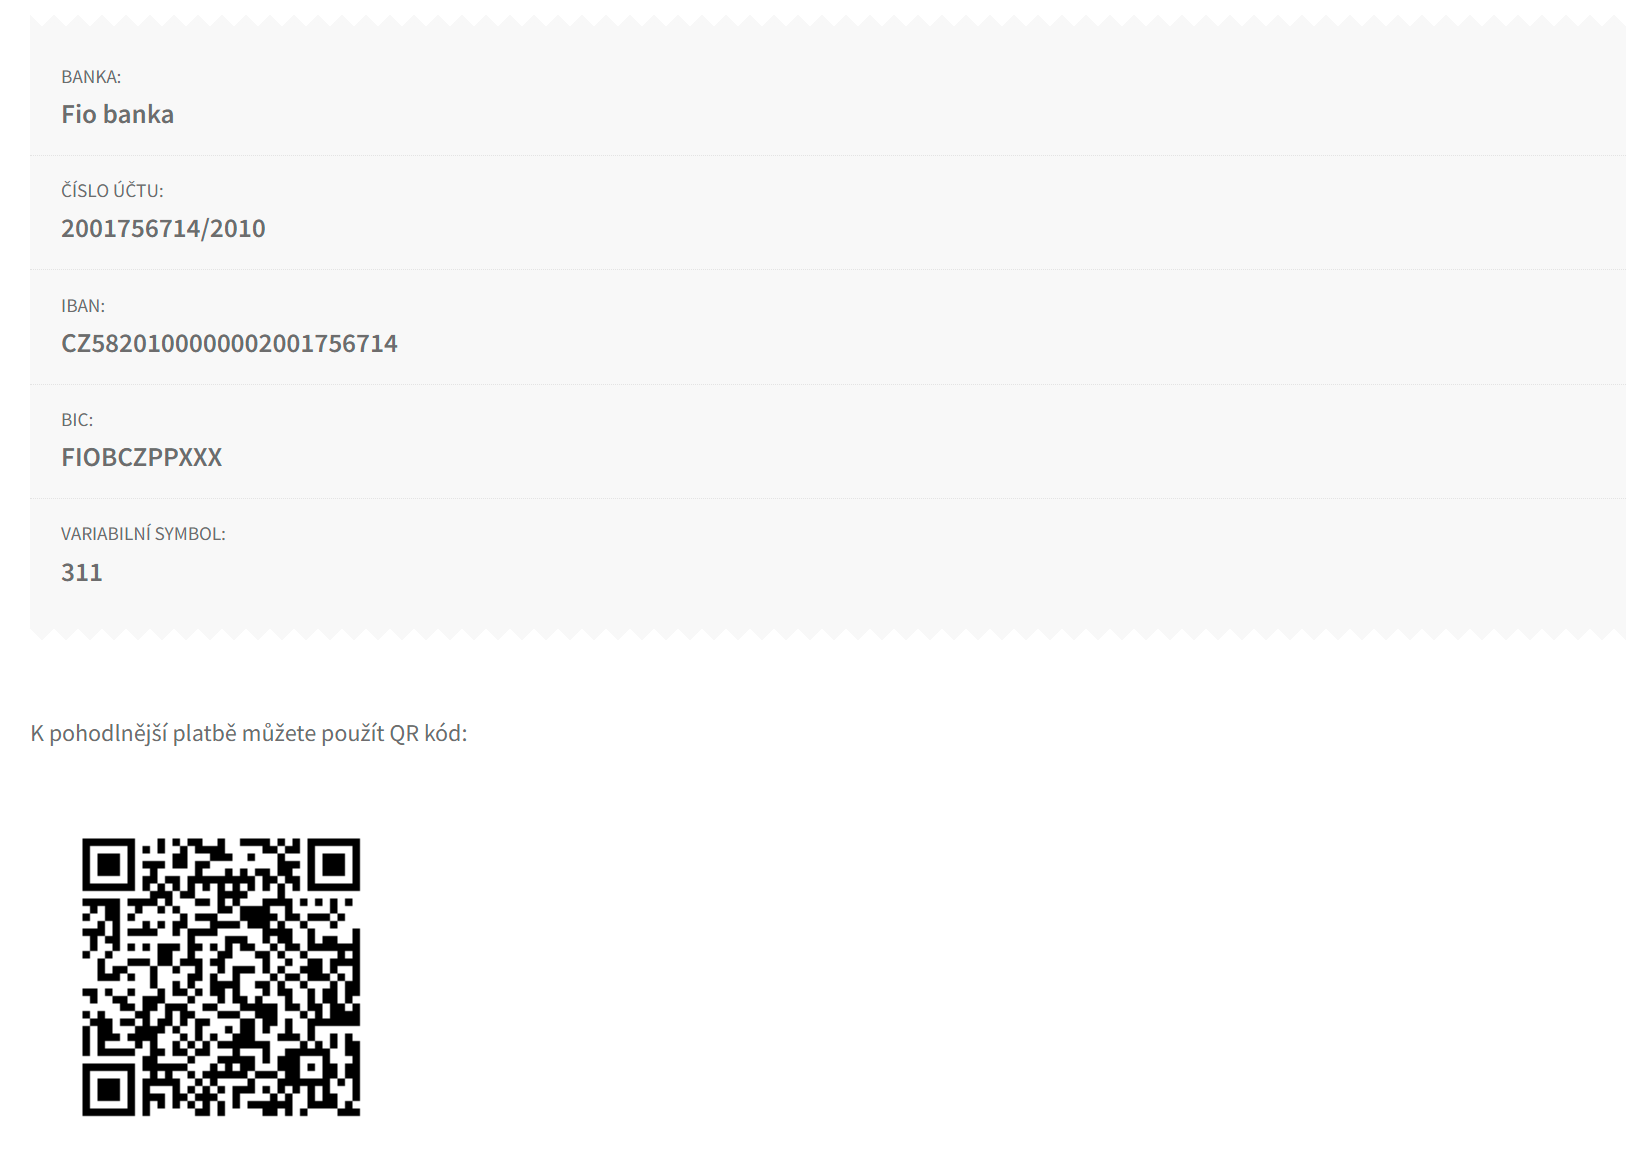 Zobrazení QR kódu k úhradě bankovním převodem ve WooCommerce pokladně